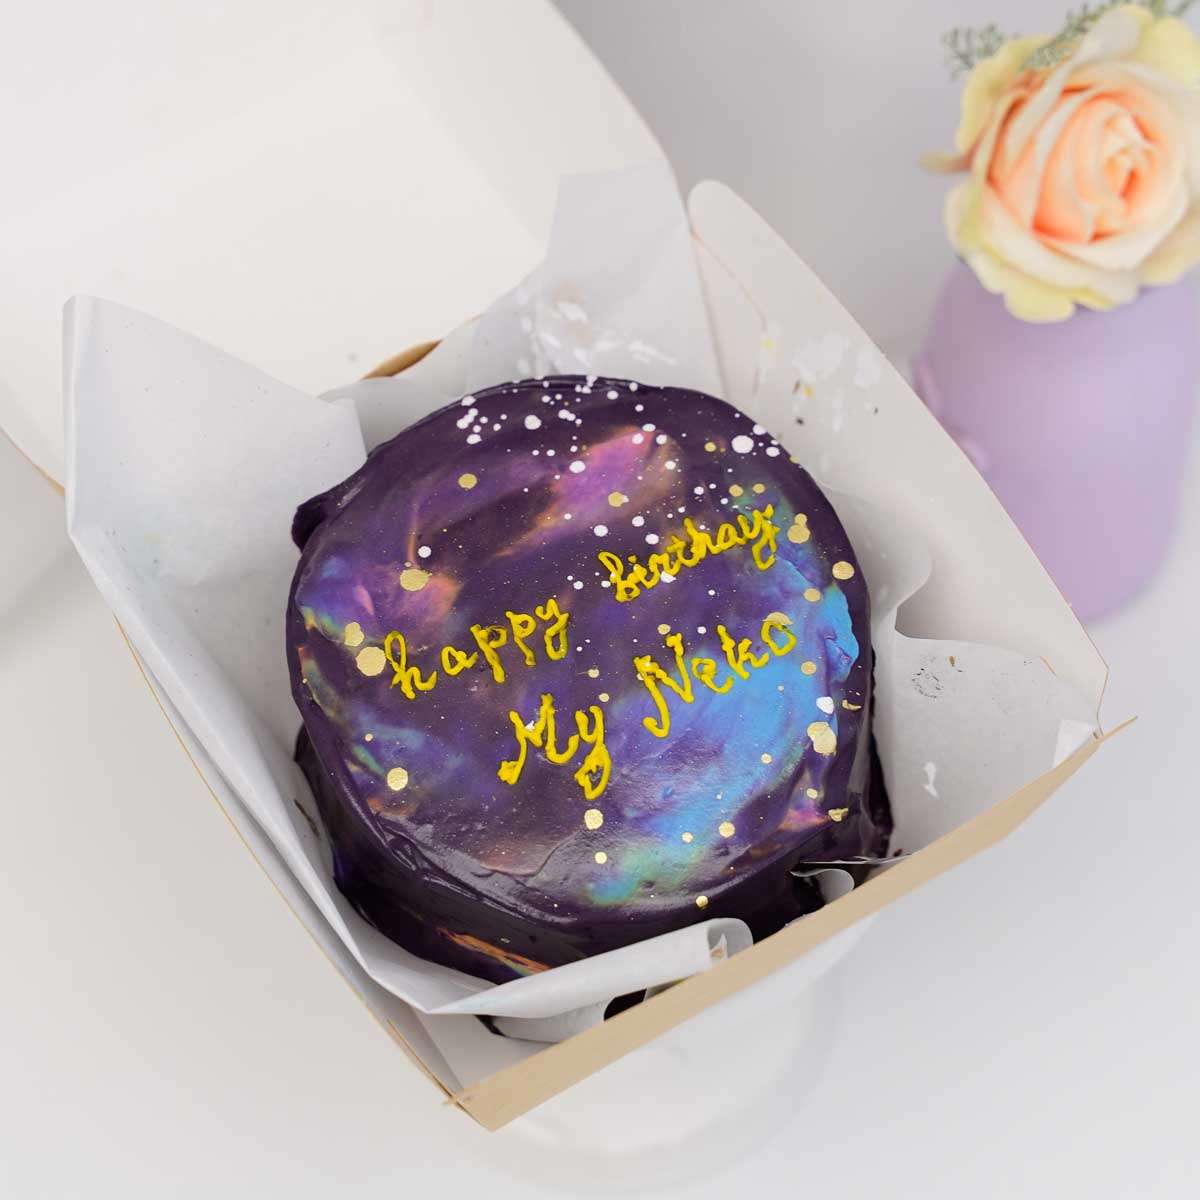 торт с космическим фоном и надписью